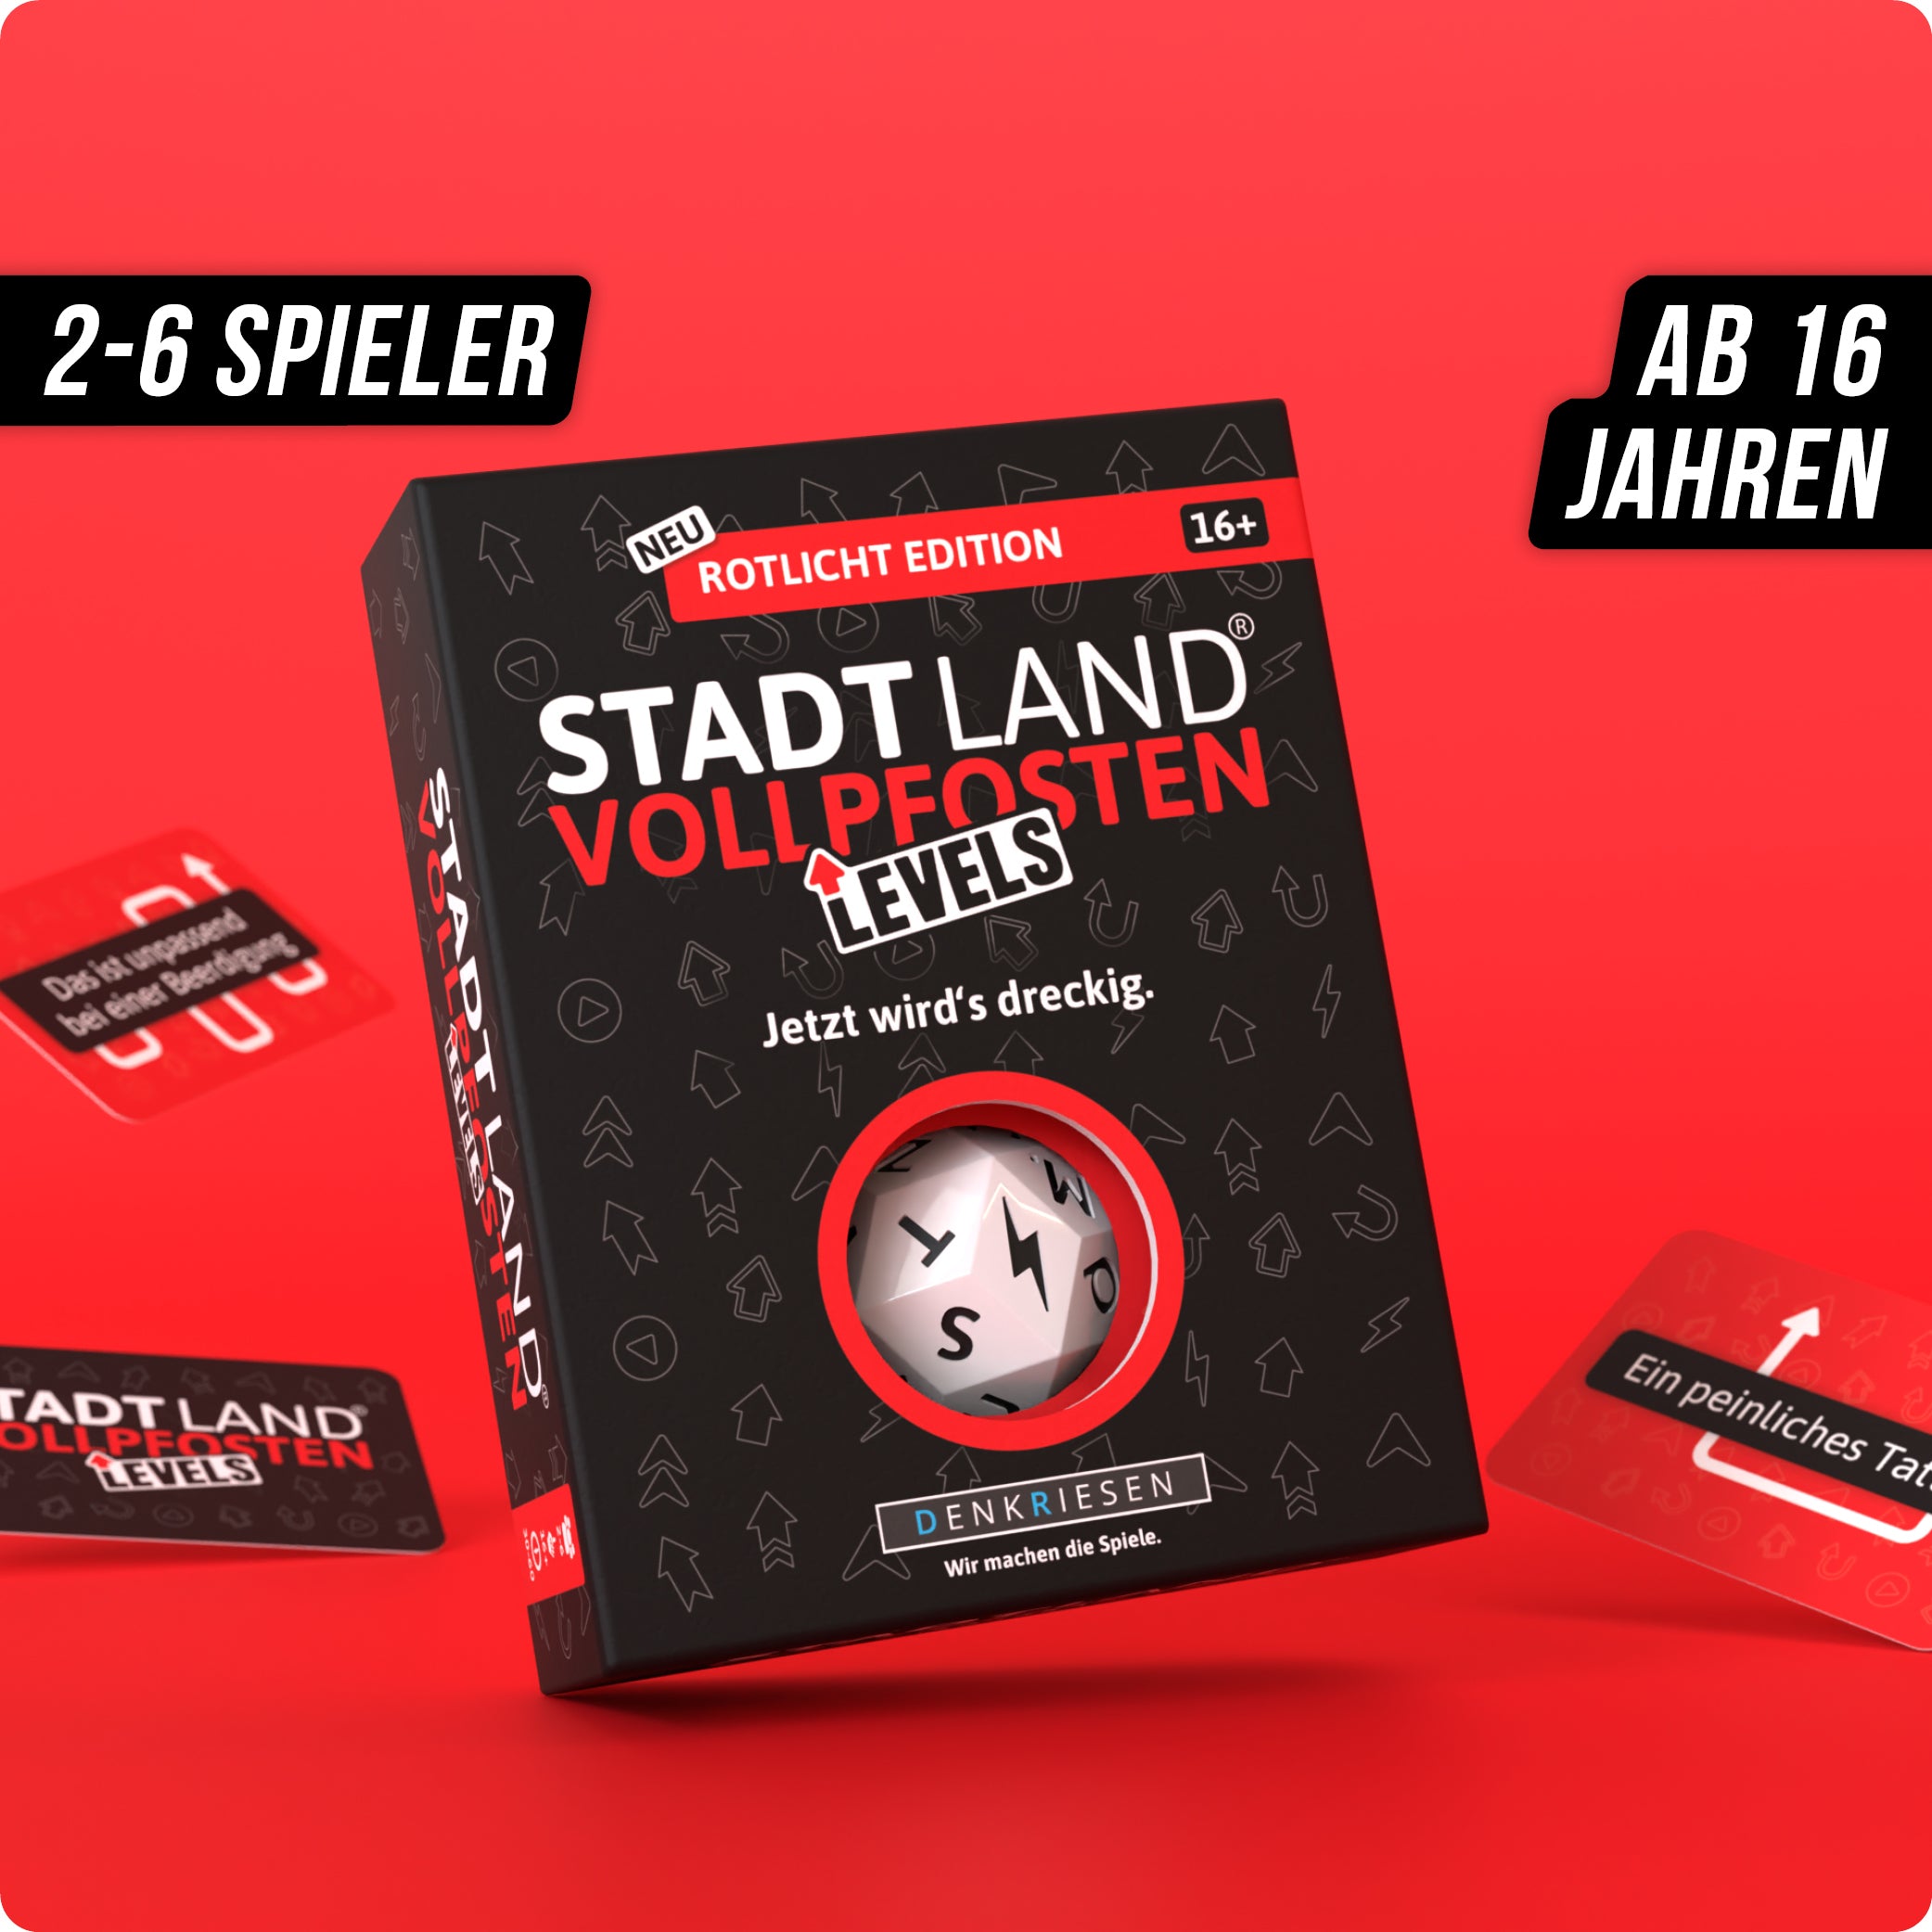 Stadt Land Vollpfosten® Levels | Rotlicht Edition – "Jetzt wird's dreckig."